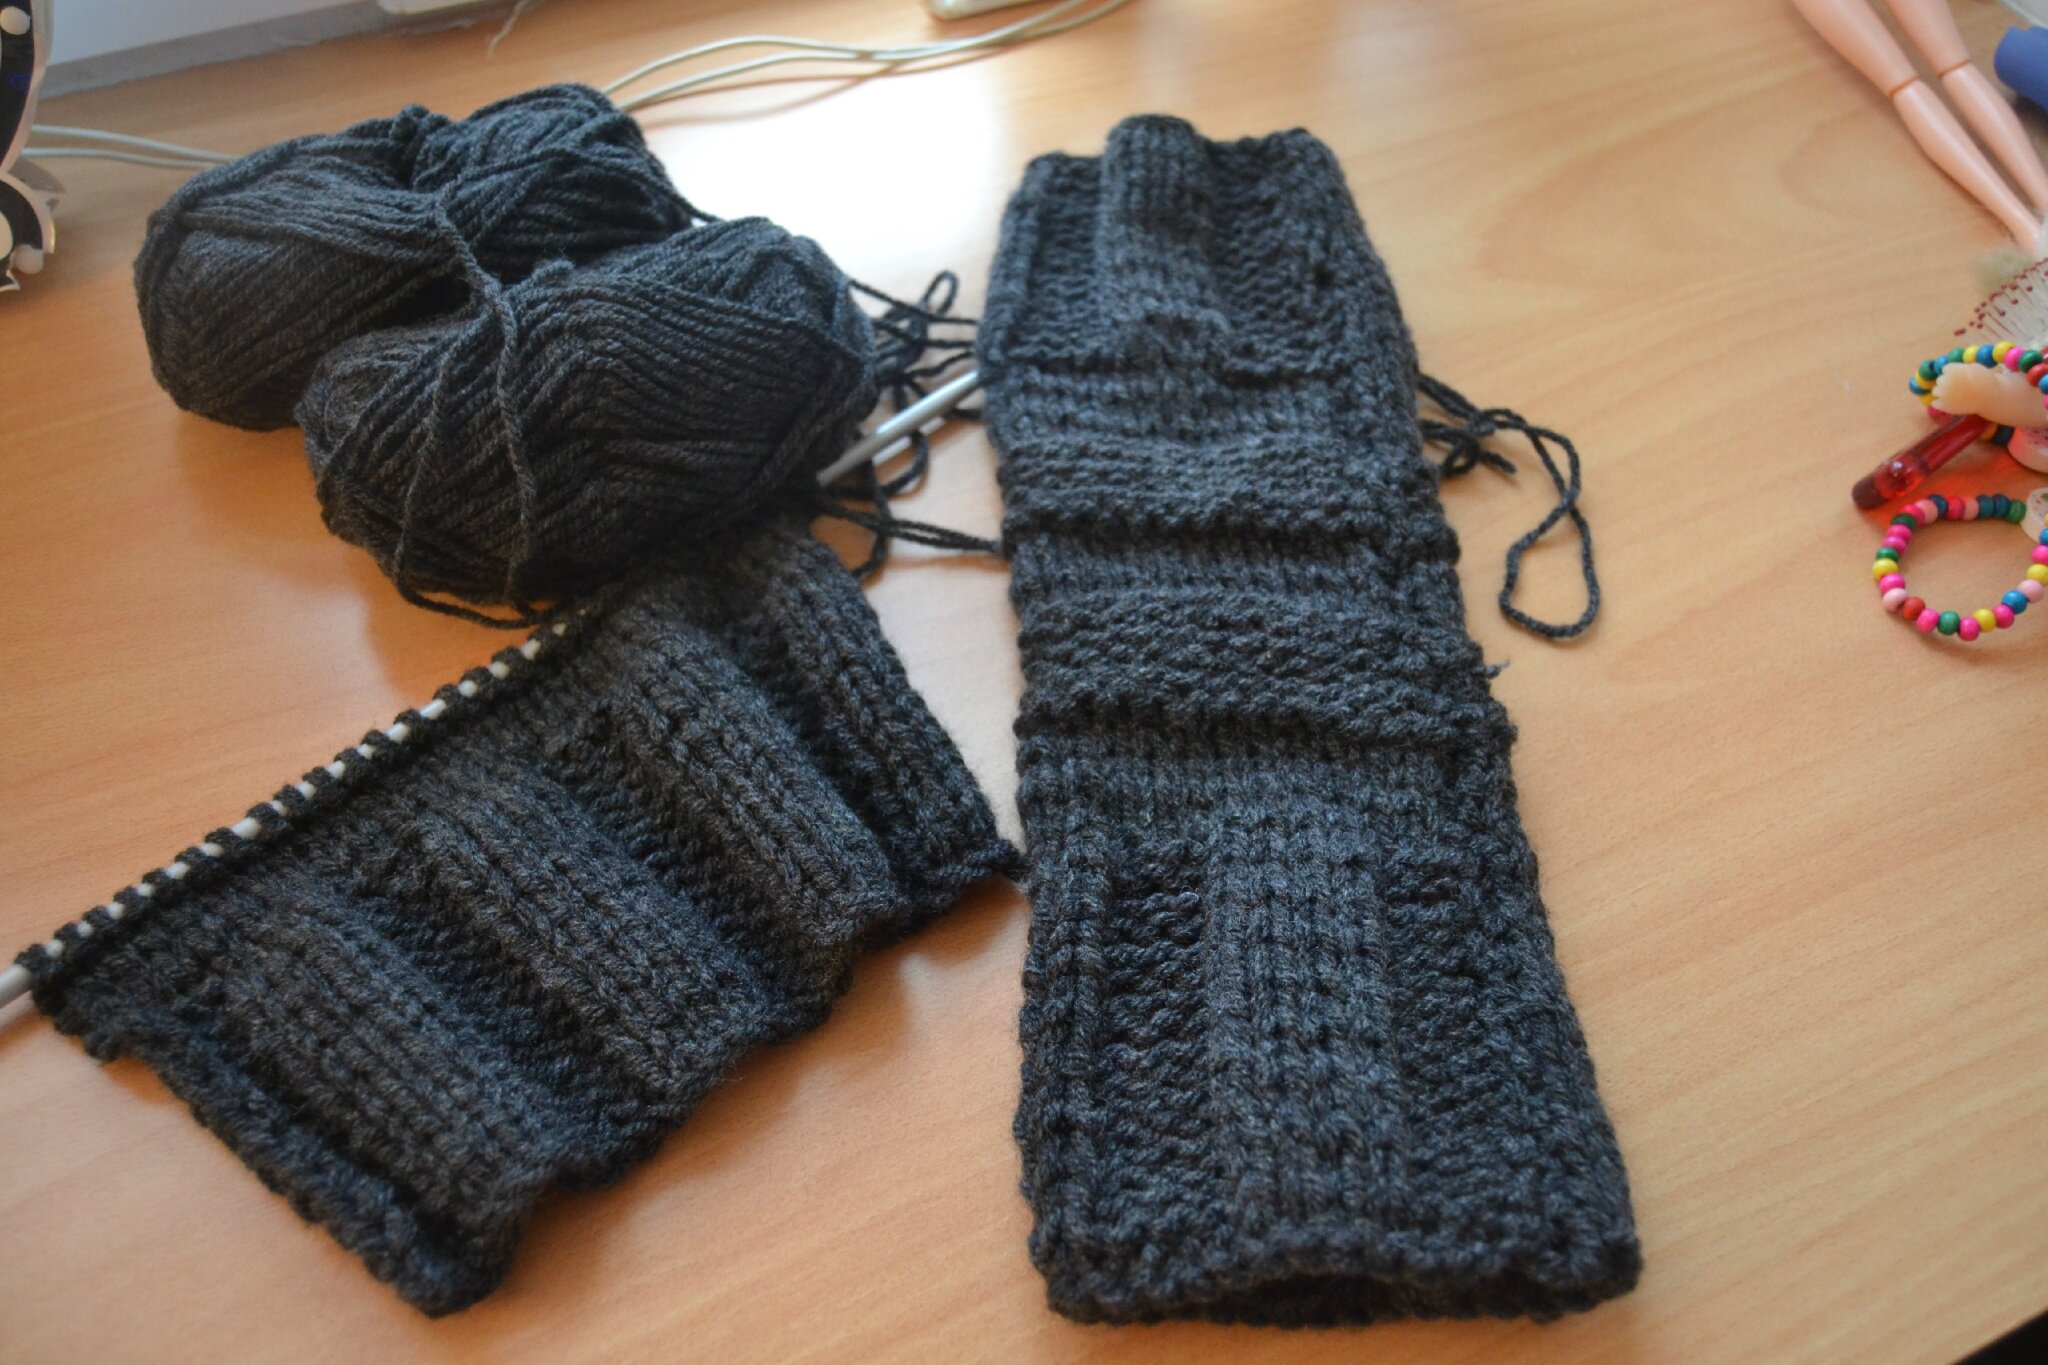 comment tricoter des guetres